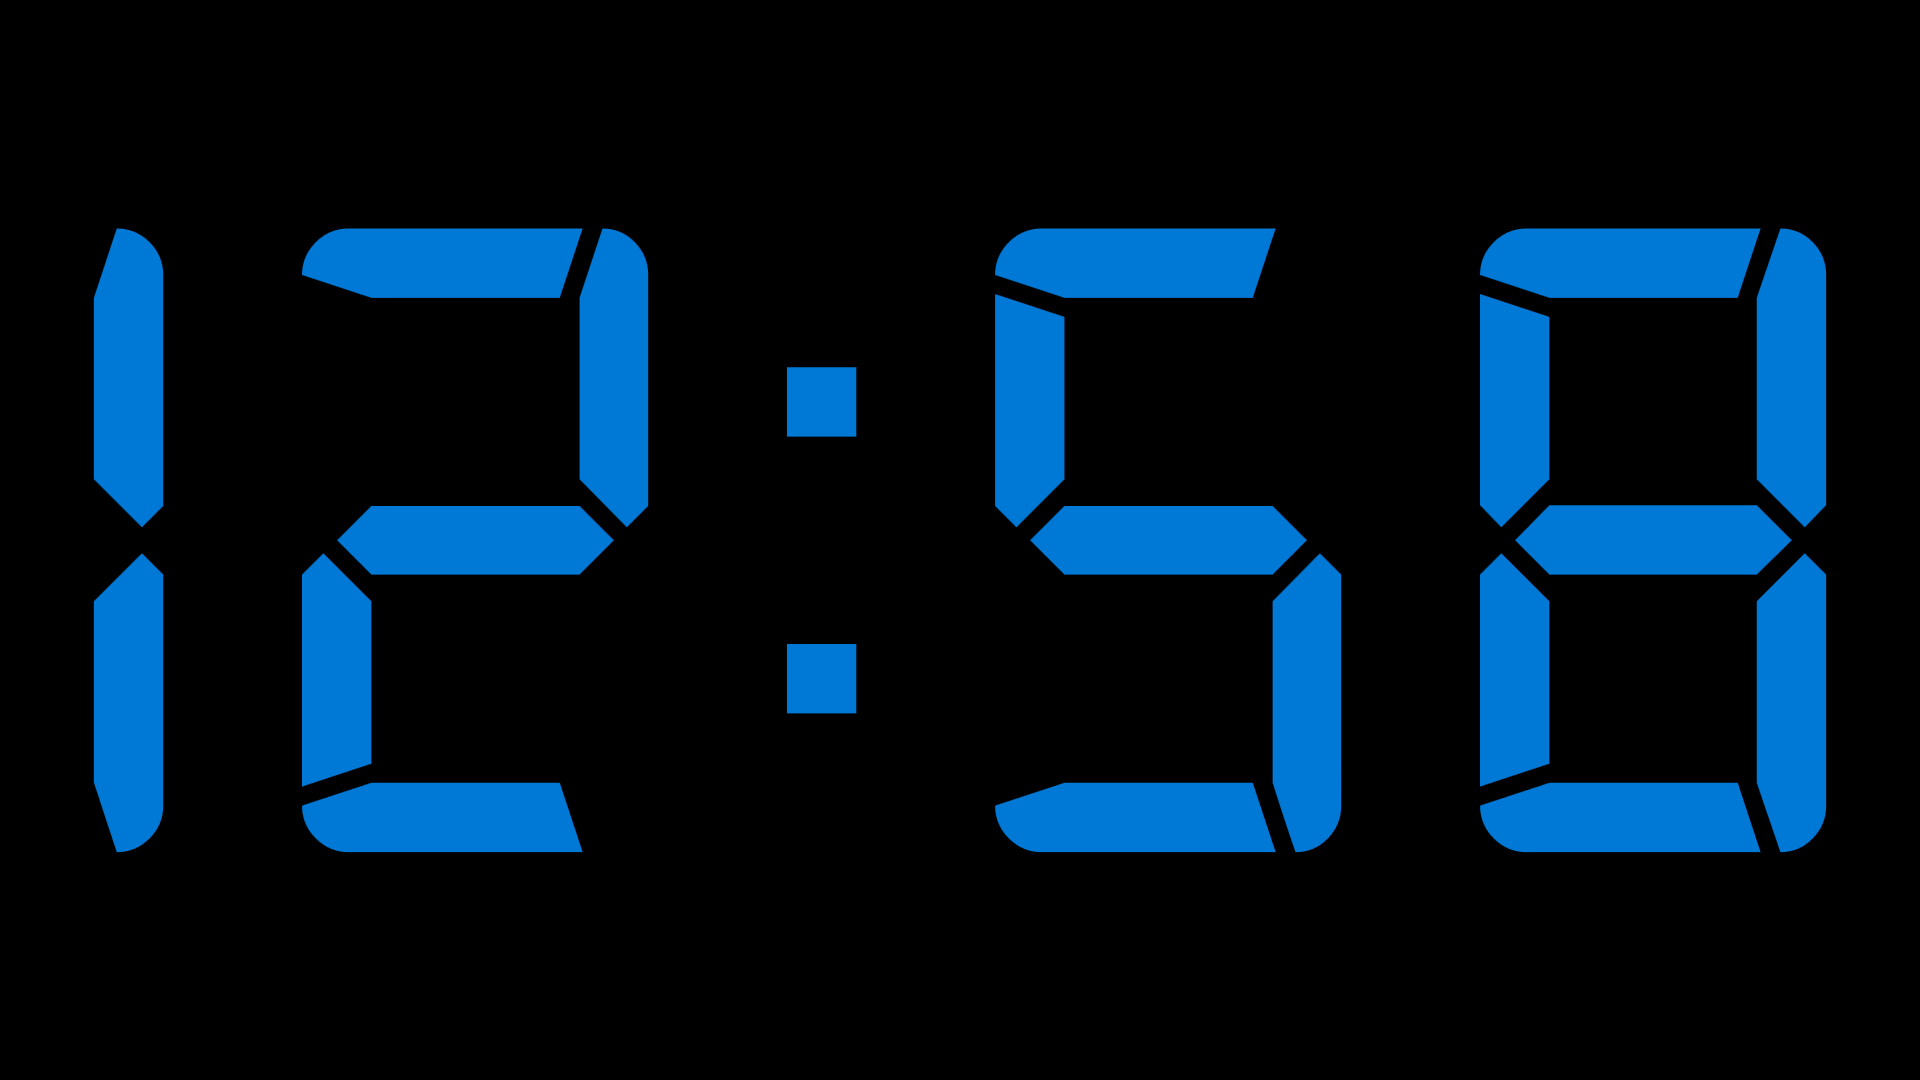 Установить часы про 8. Часы Digital Clock 200730138828.4. Цифровые часы на экран. Скринсейвер электронные часы. Большие электронные часы.